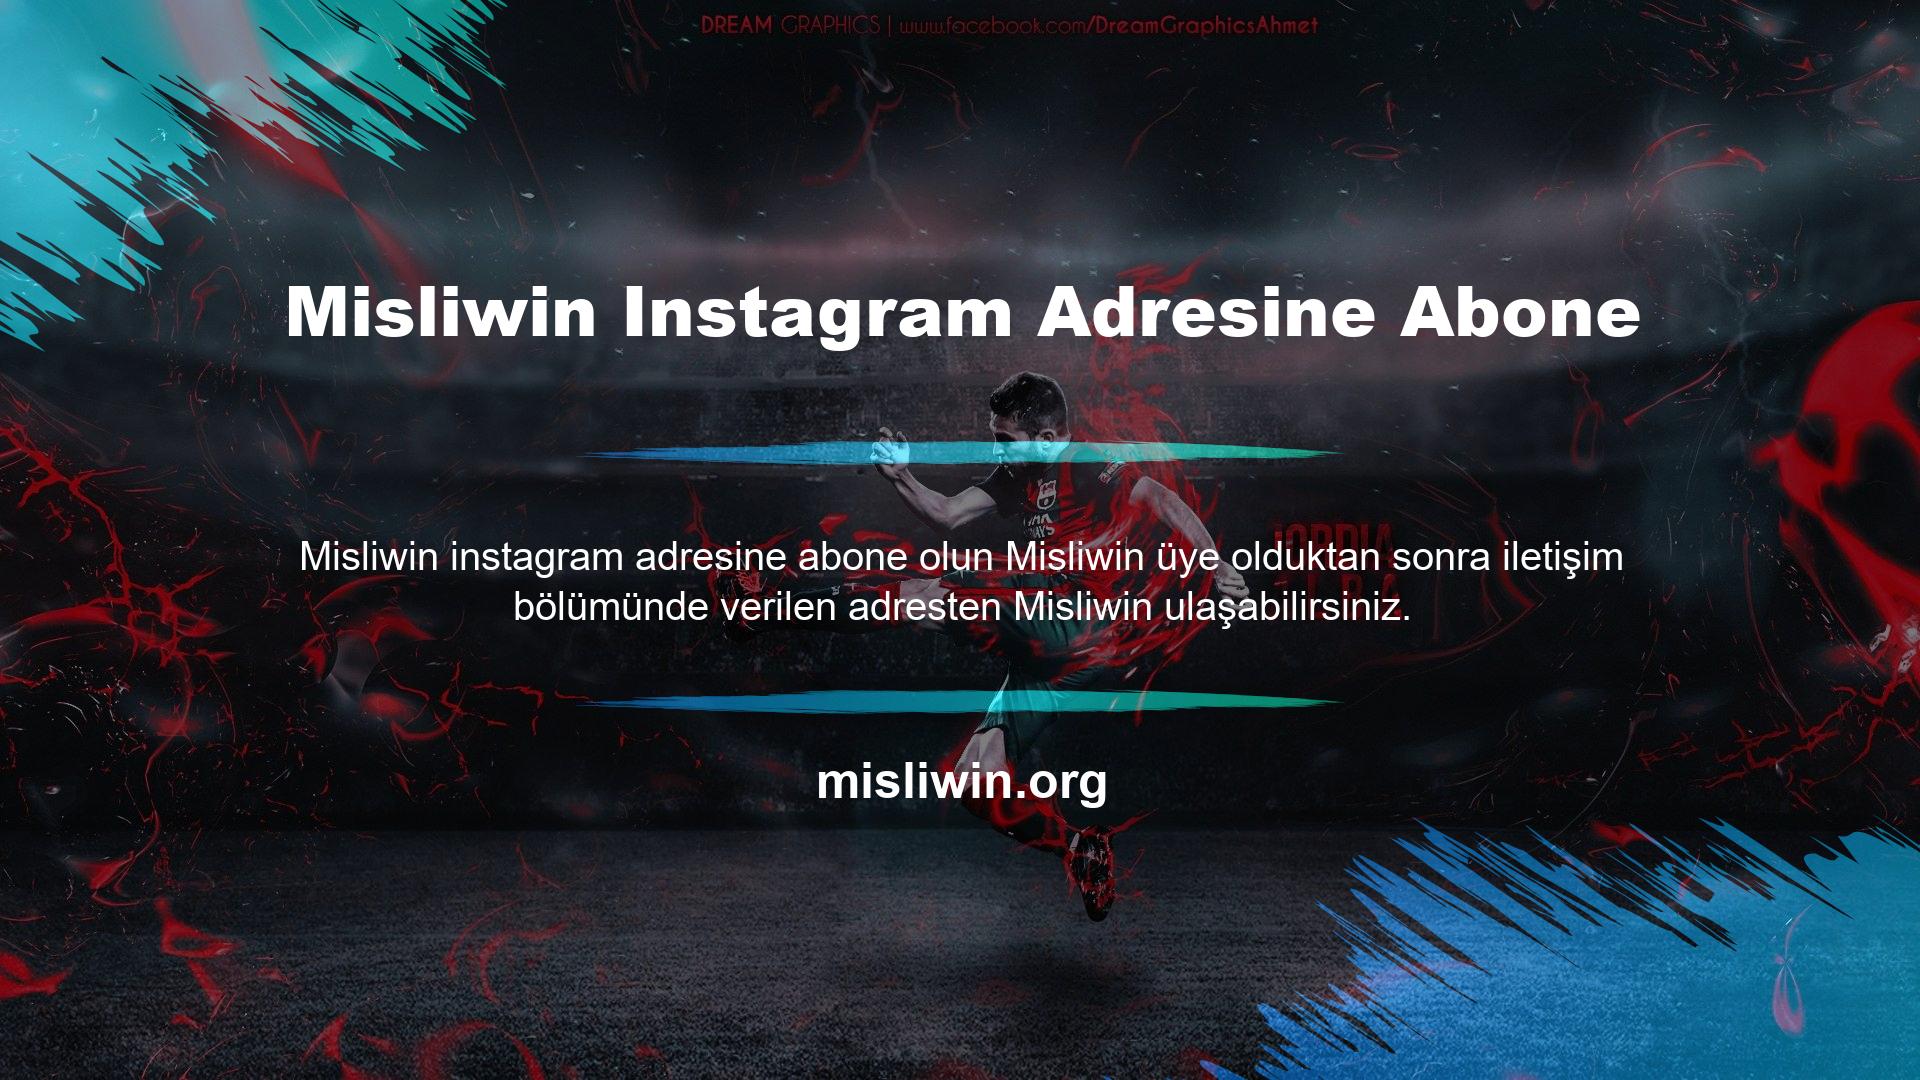 Misliwin, Instagram'da arama yapılarak da bulunabilir